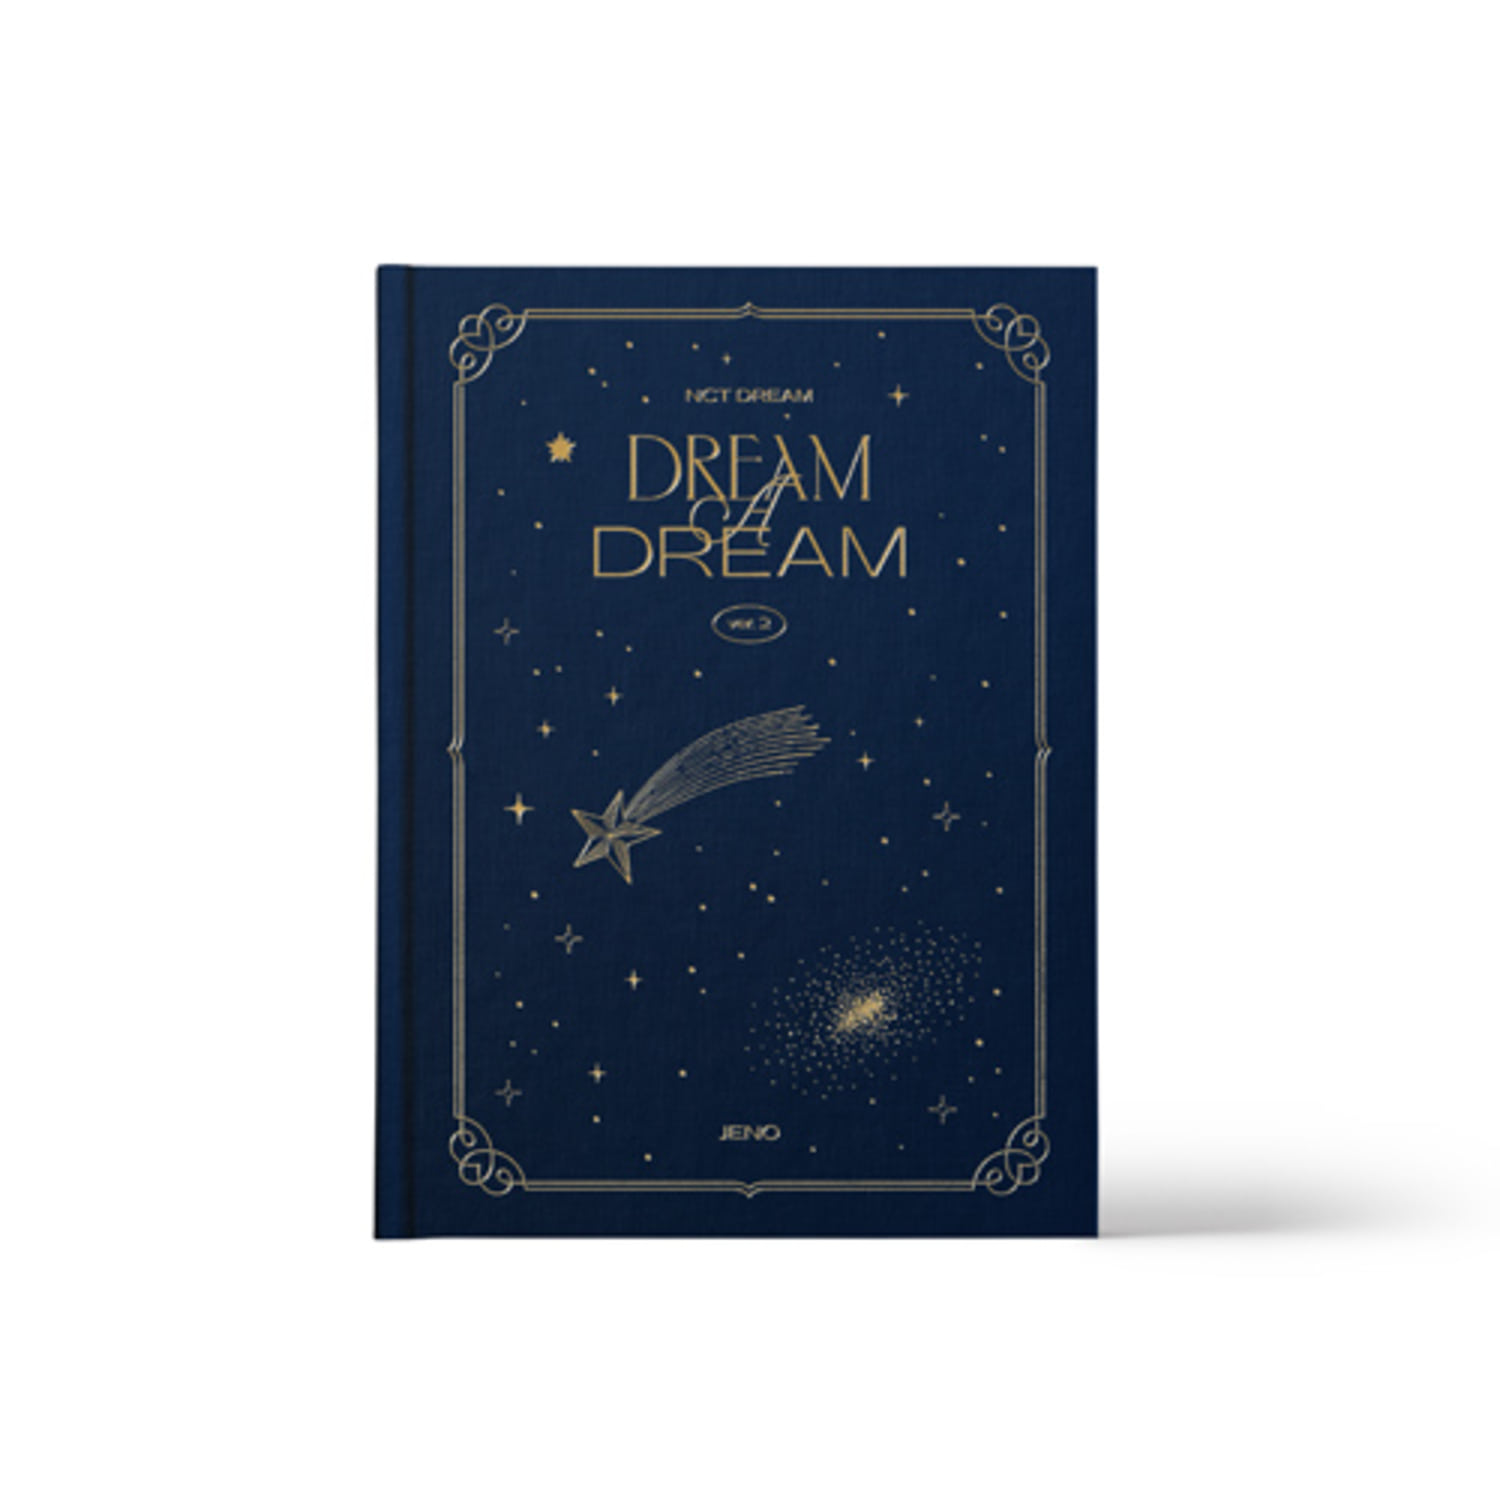 [교환반품불가]NCT DREAM  - (JENO) NCT DREAM PHOTO BOOK  [DREAM A DREAM ver.2]